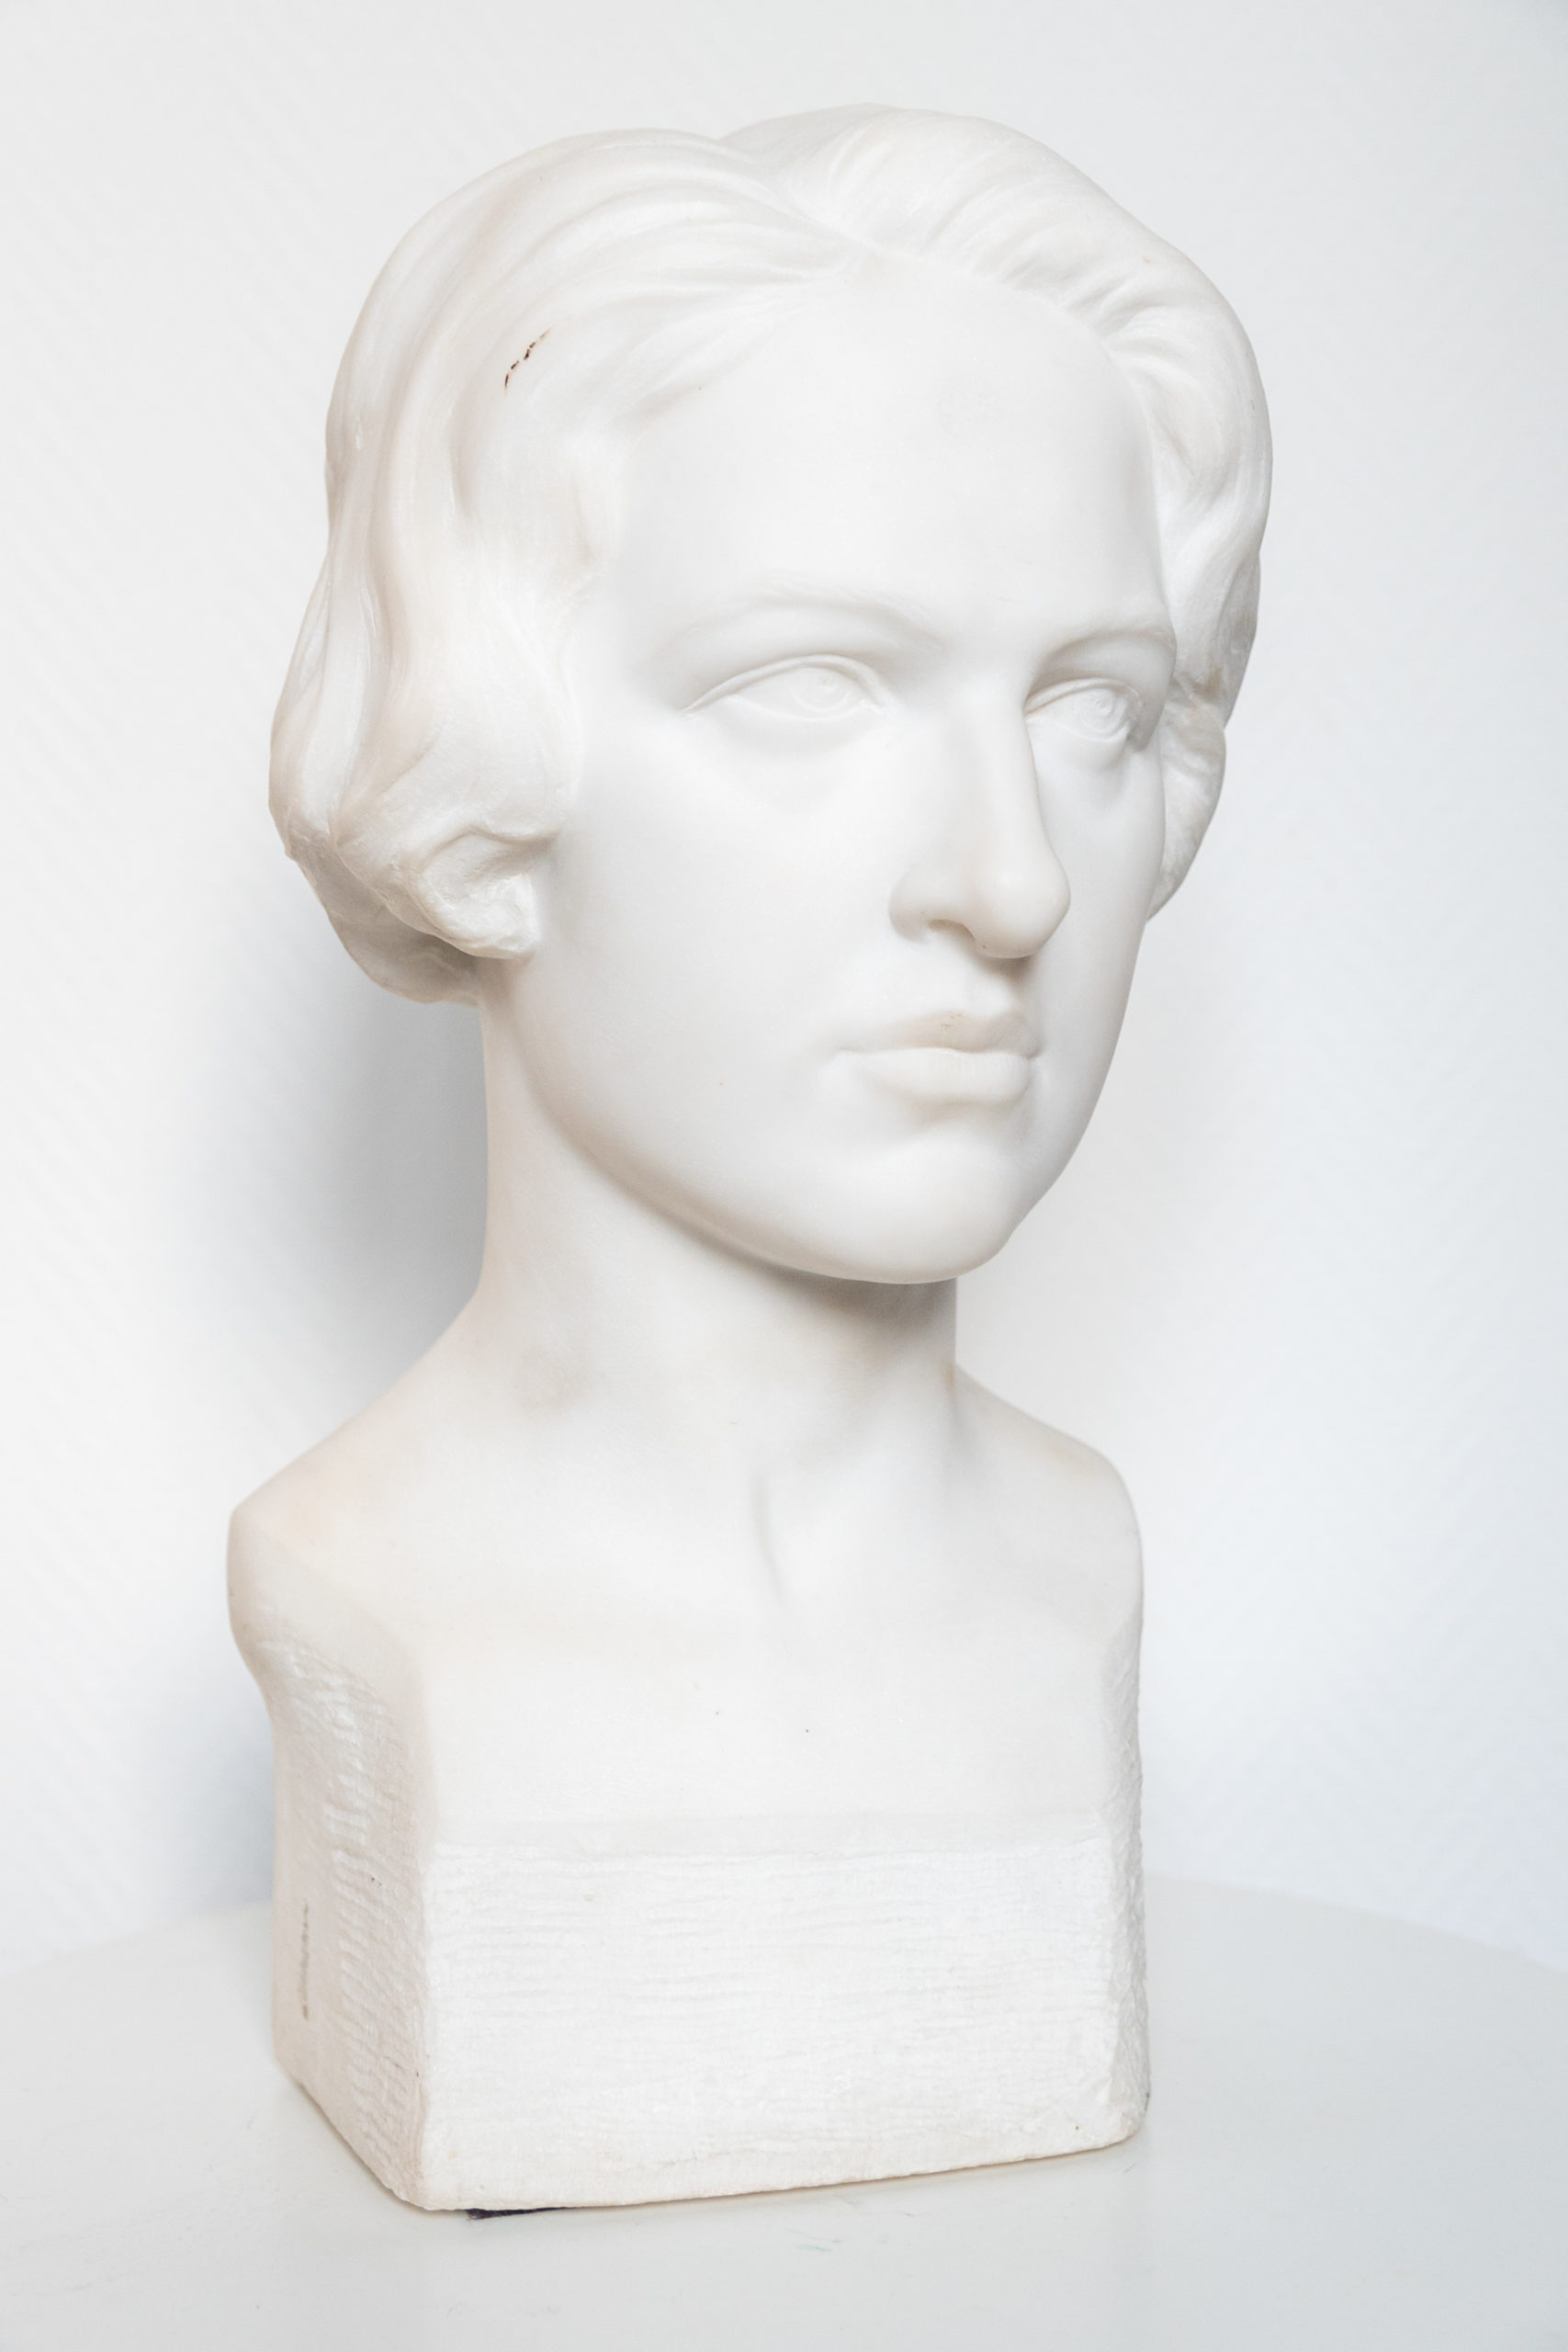 Buste-marbre-carrare-charles-ernest-diosi-sculpture-1920-Buste-femme-antiquaire-liège-aurore-morisse-affaire-conclue1